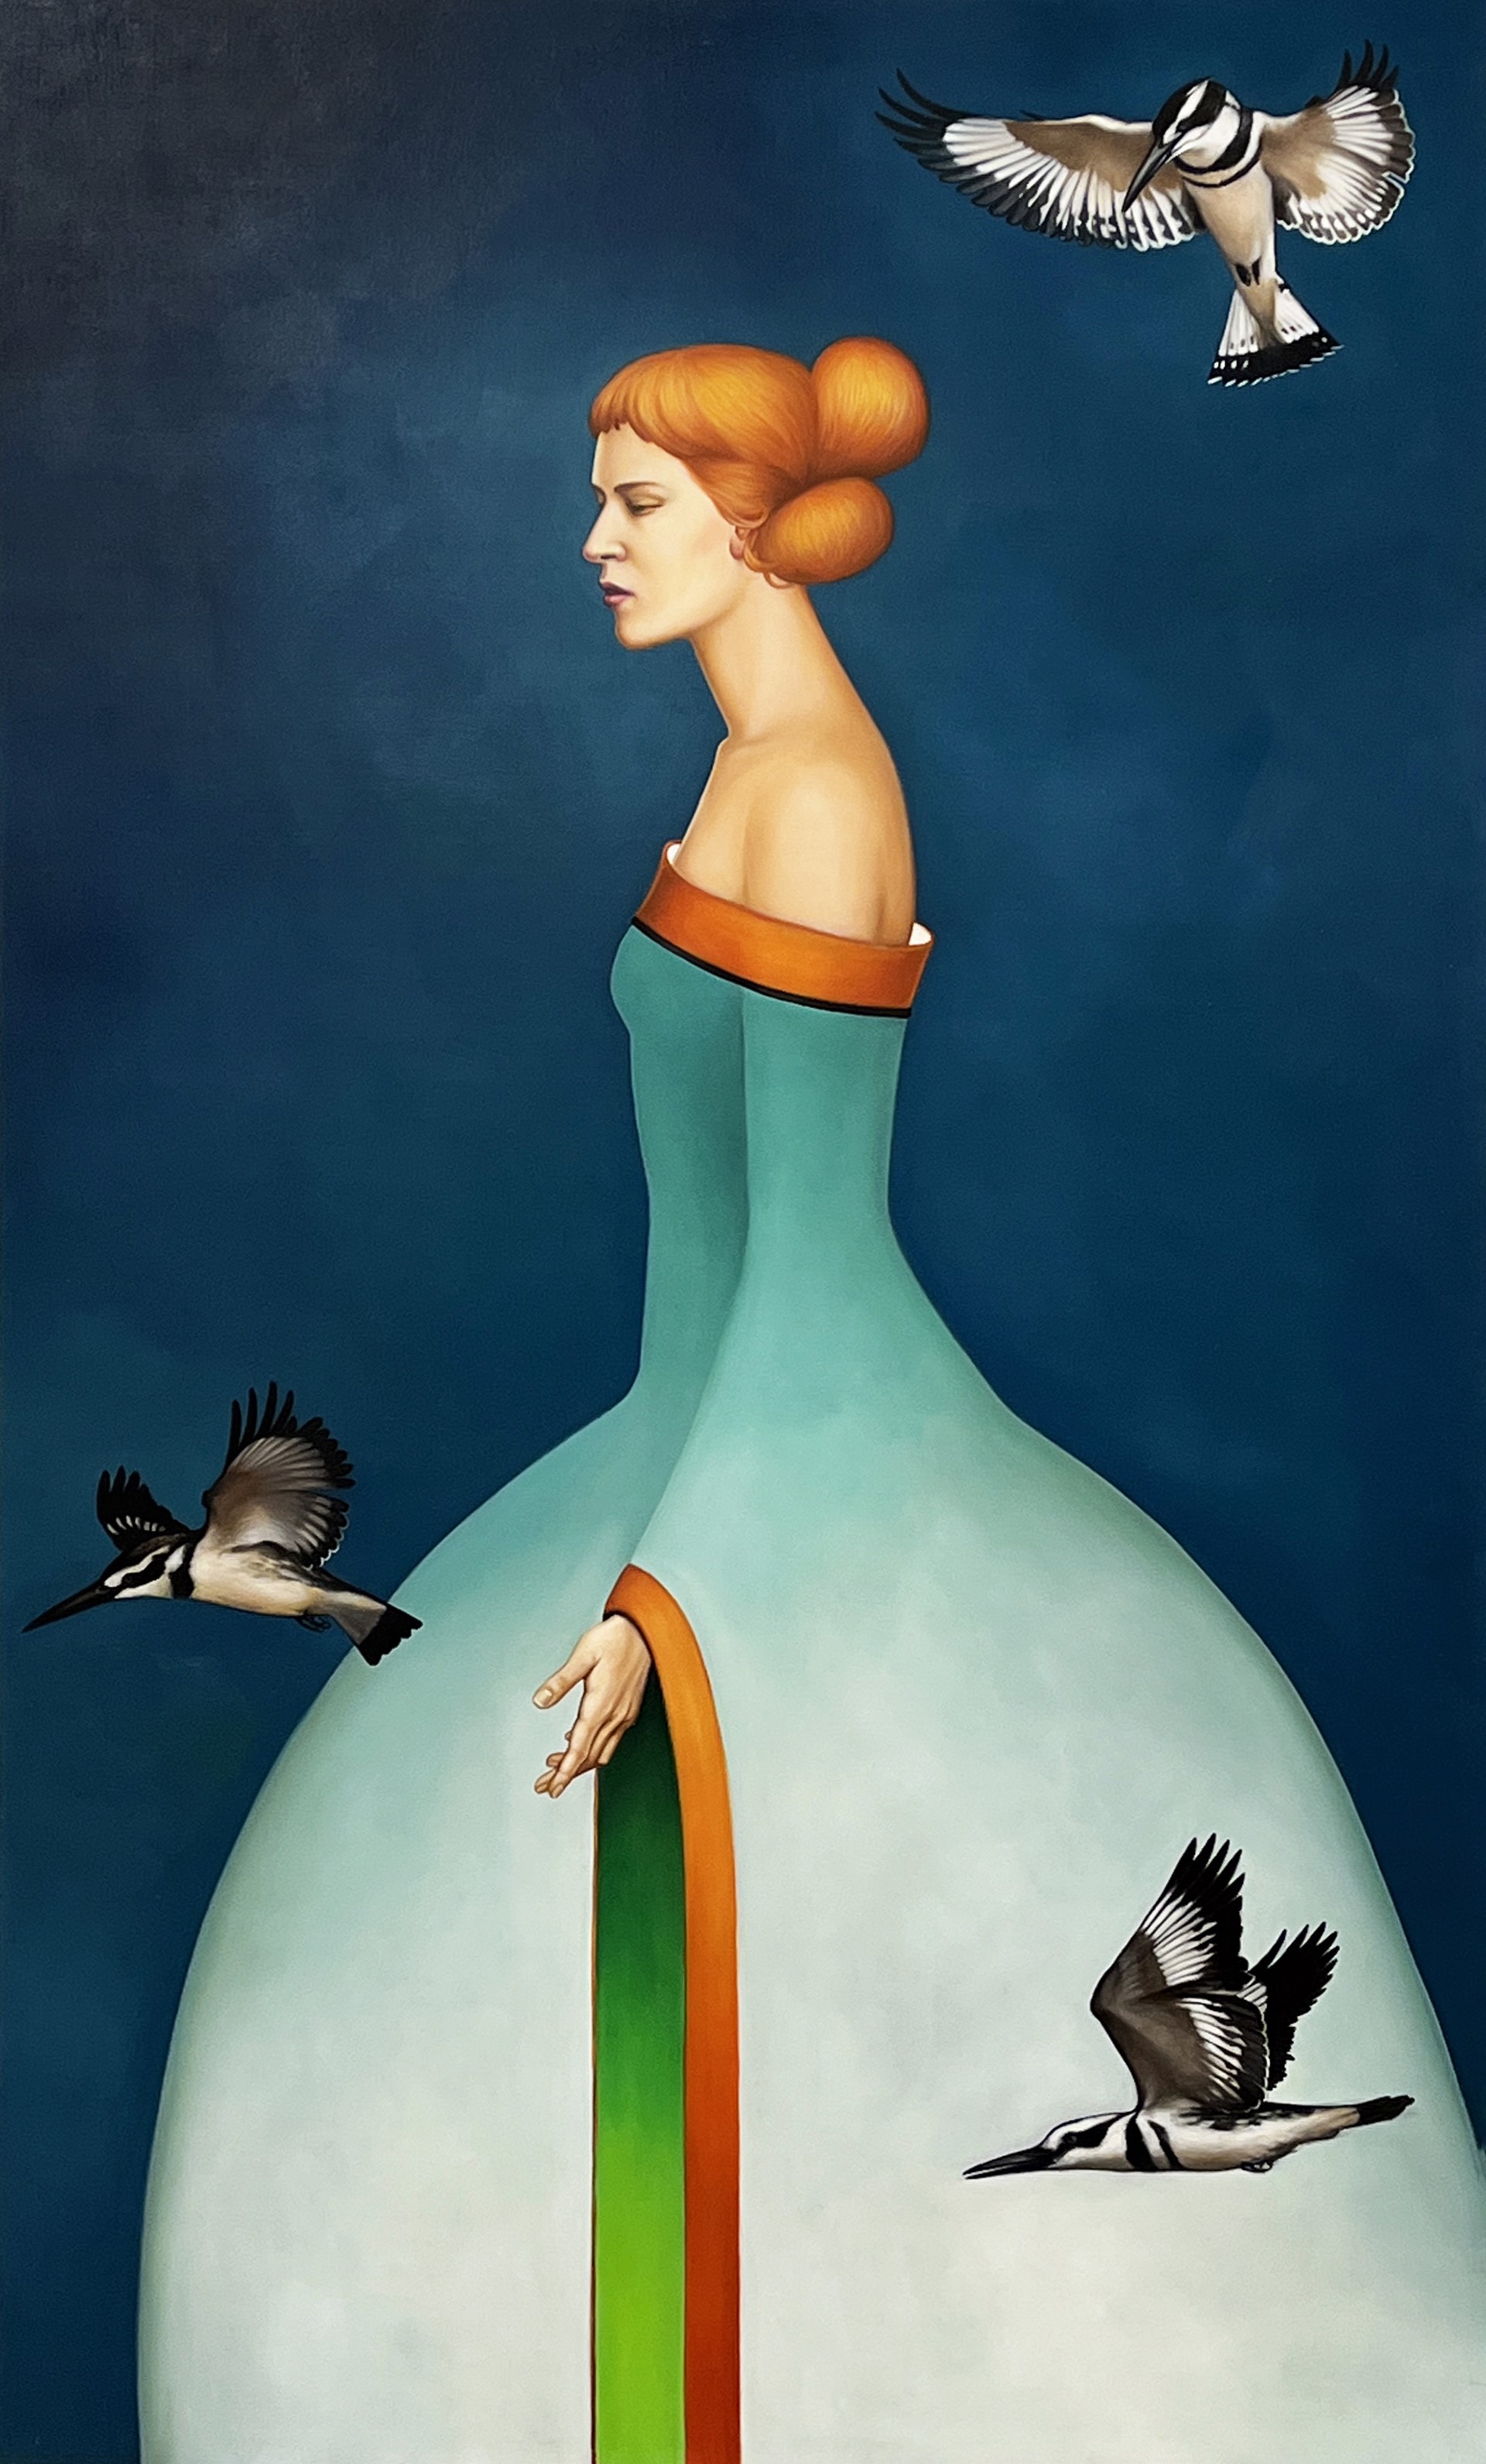 Kingfishers by Kelli Hoppmann